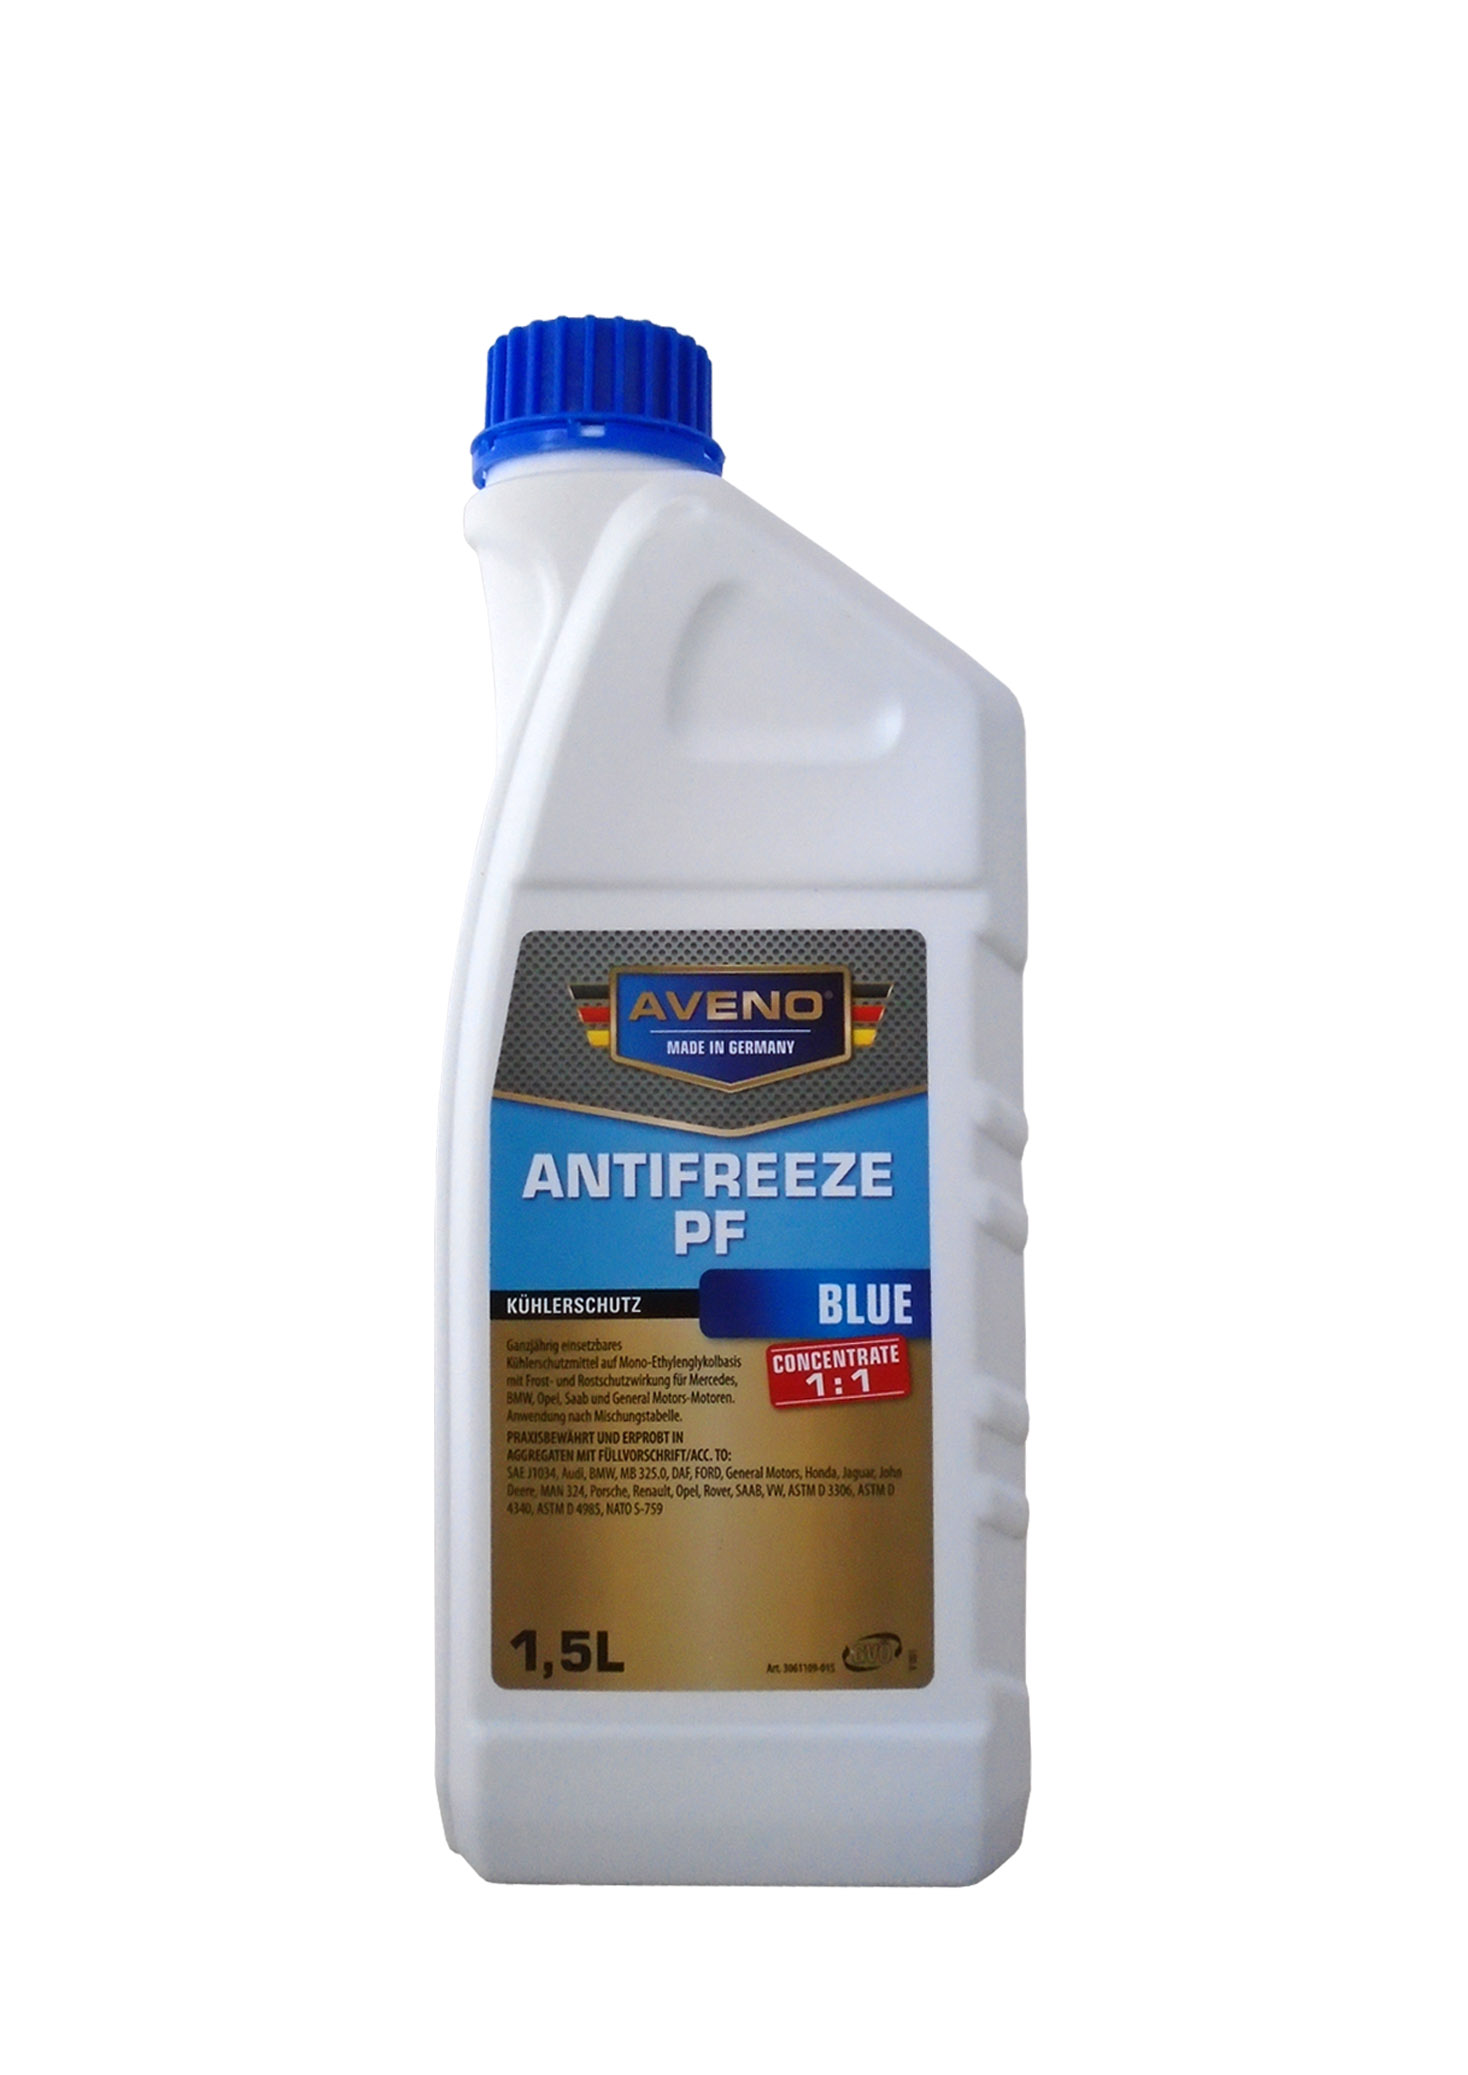 Антифриз концентрированный AVENO Antifreeze PF (1,5л) 2410509015